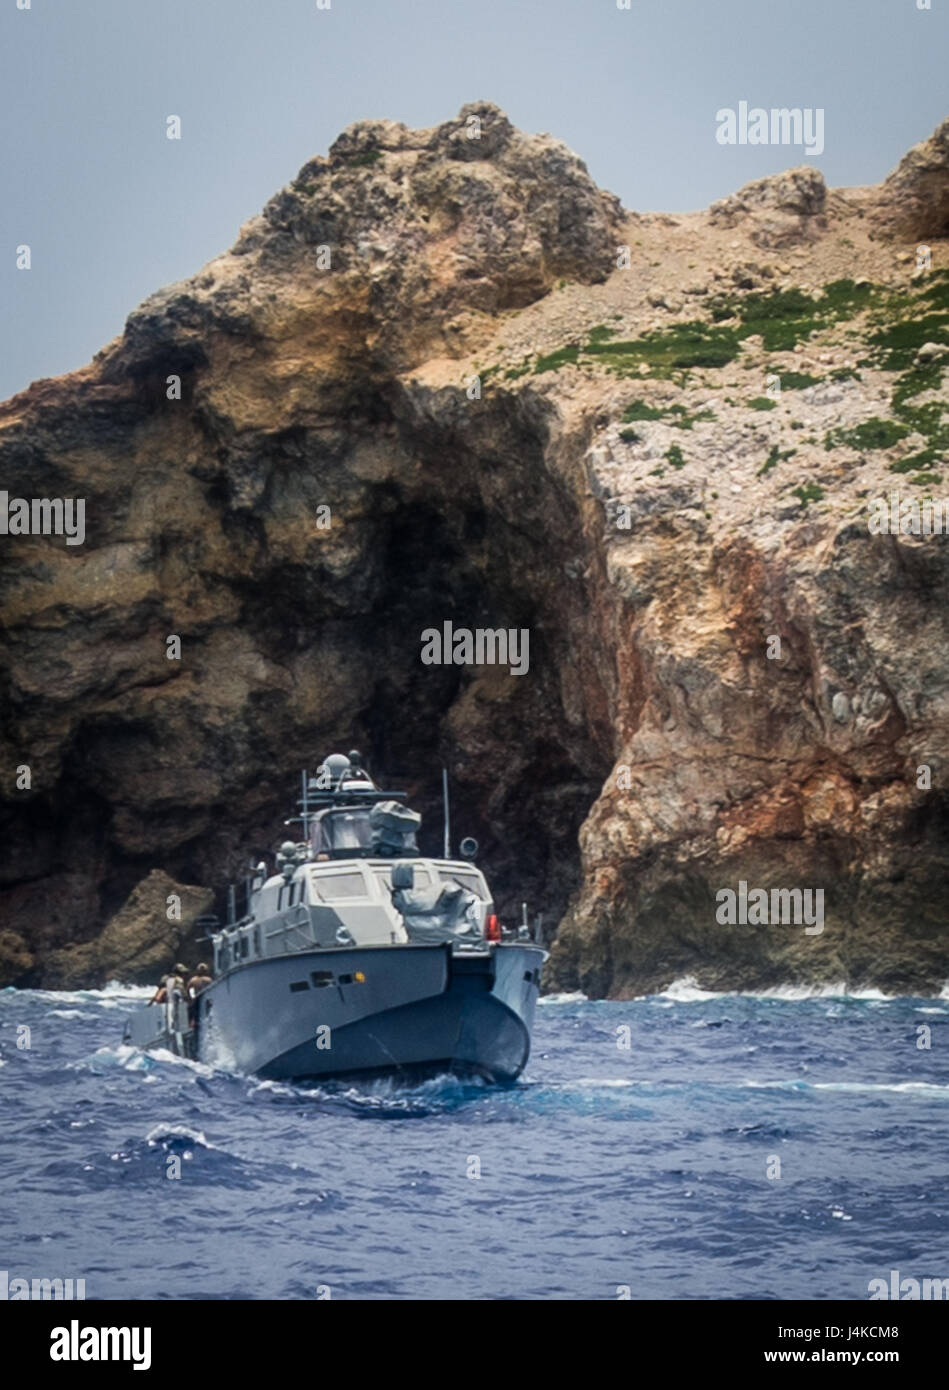 Les marins affectés à l'unité mobile de destruction des engins explosifs (5) 142 EODMU5 peloton et fluviales côtières Groupe 1 pratique du détachement de déminage du port de Guam en utilisant les techniques des véhicules sous-marins téléguidés déployée à partir d'un MK VI le bateau de patrouille dans l'océan Pacifique le 10 mai 2017. EODMU5 est actuellement en train de tester sa capacité à déployer des actifs de différentes plates-formes, y compris des hélicoptères et des bateaux de patrouille, d'augmenter son interopérabilité adaptative. EODMU5 mène la lutte contre les mines, engins explosifs improvisés, les opérations de sécurité rend les dangers d'explosion et désarme explosifs sous-marins comme les mines. (U.S. Navy Banque D'Images